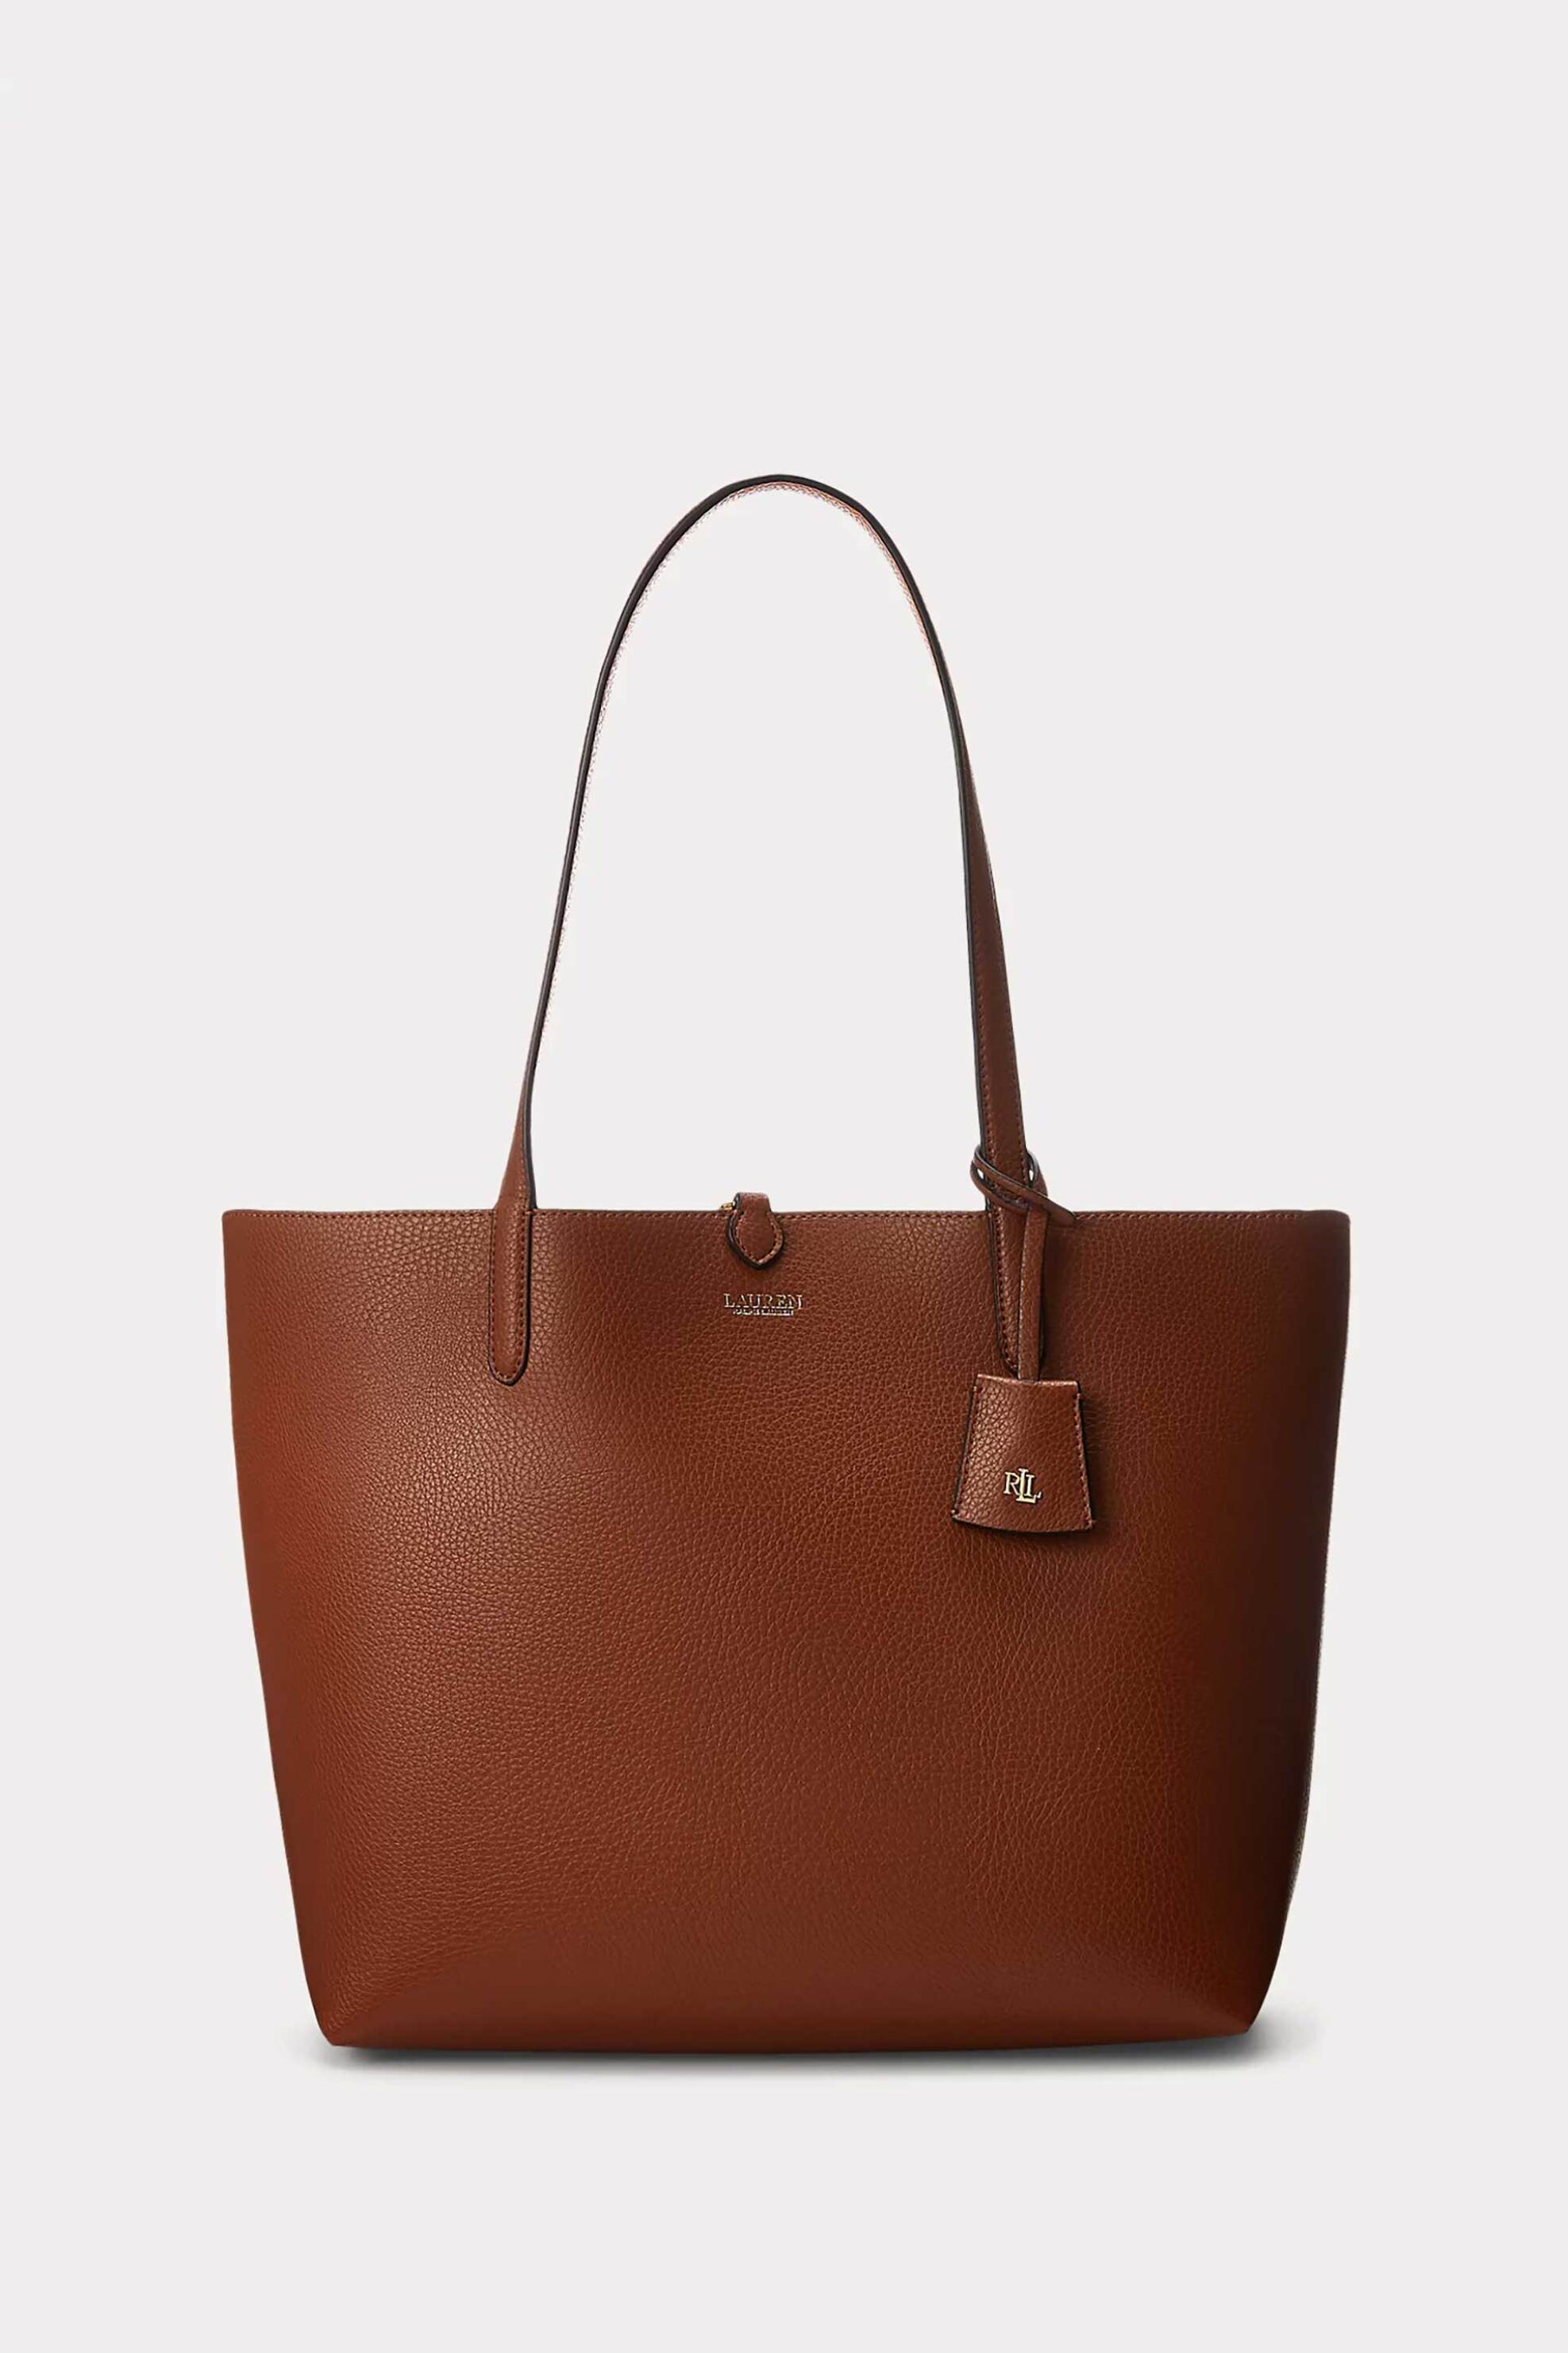 Γυναίκα > ΤΣΑΝΤΕΣ > Τσάντες Ώμου & Shopper Bags Lauren Ralph Lauren γυναικεία τσάντα tote διπλής όψης με σταμπωτό λογότυπο - 323-431795329/002 Ταμπά